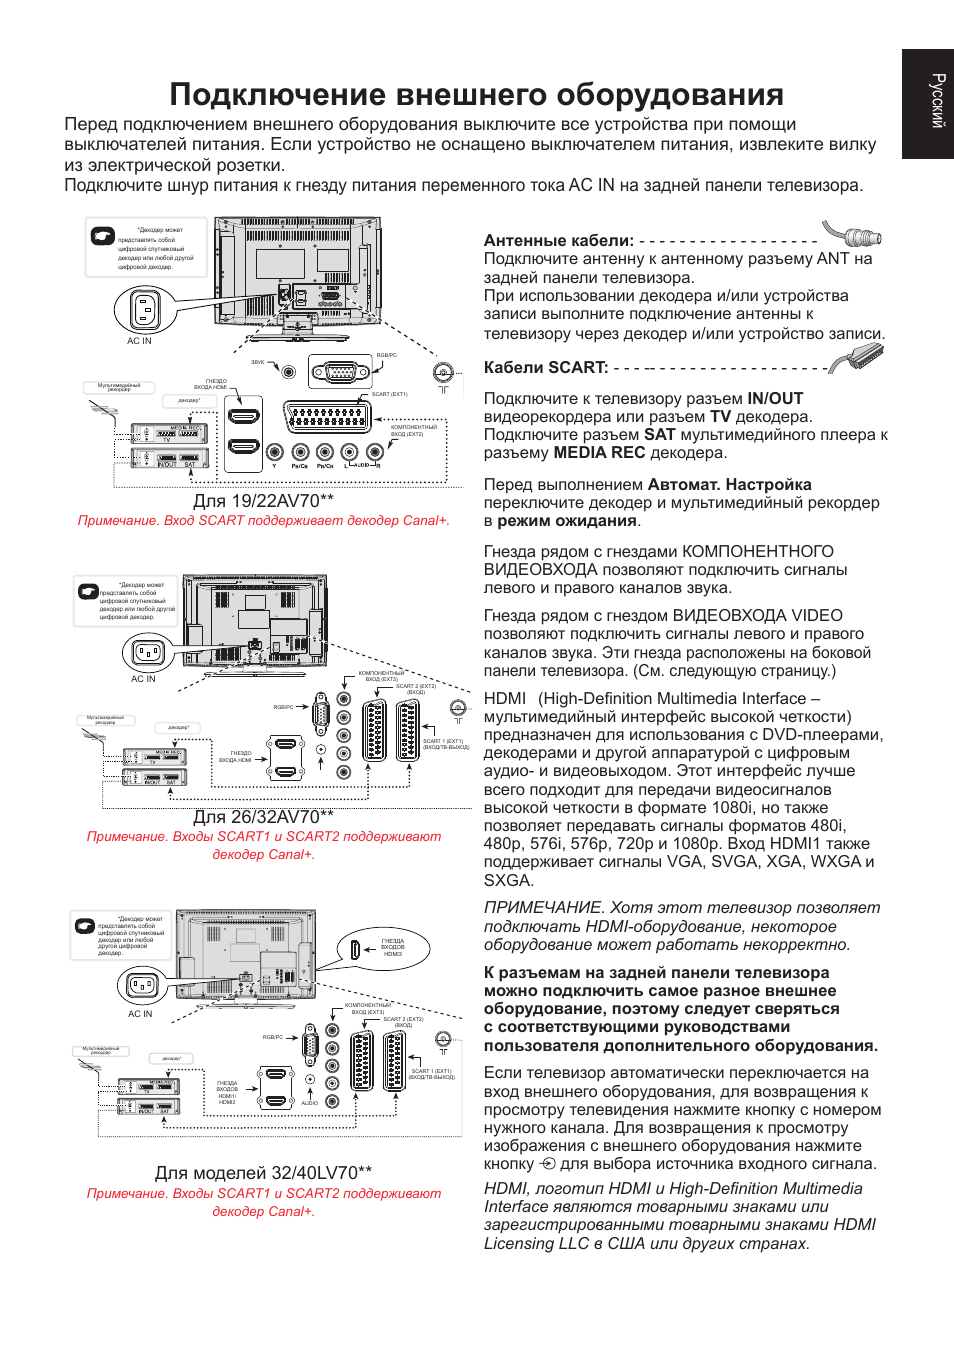 Радиоприемника retekess tr103 - инструкция на русском, как пользоваться - вайфайка.ру